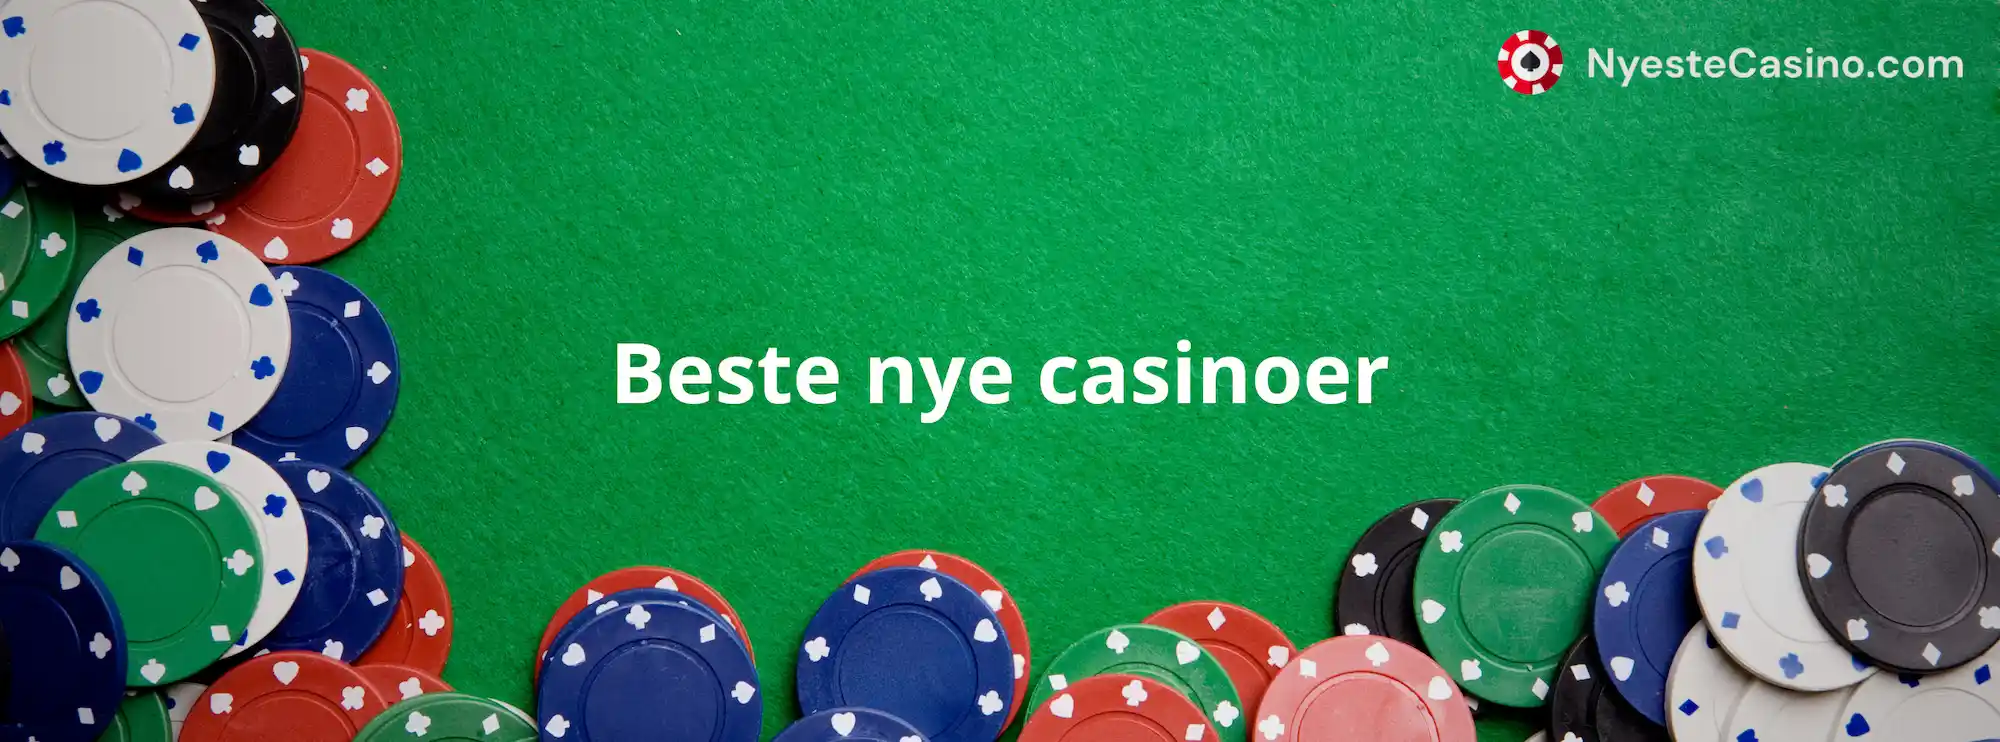 Beste nye casinoer